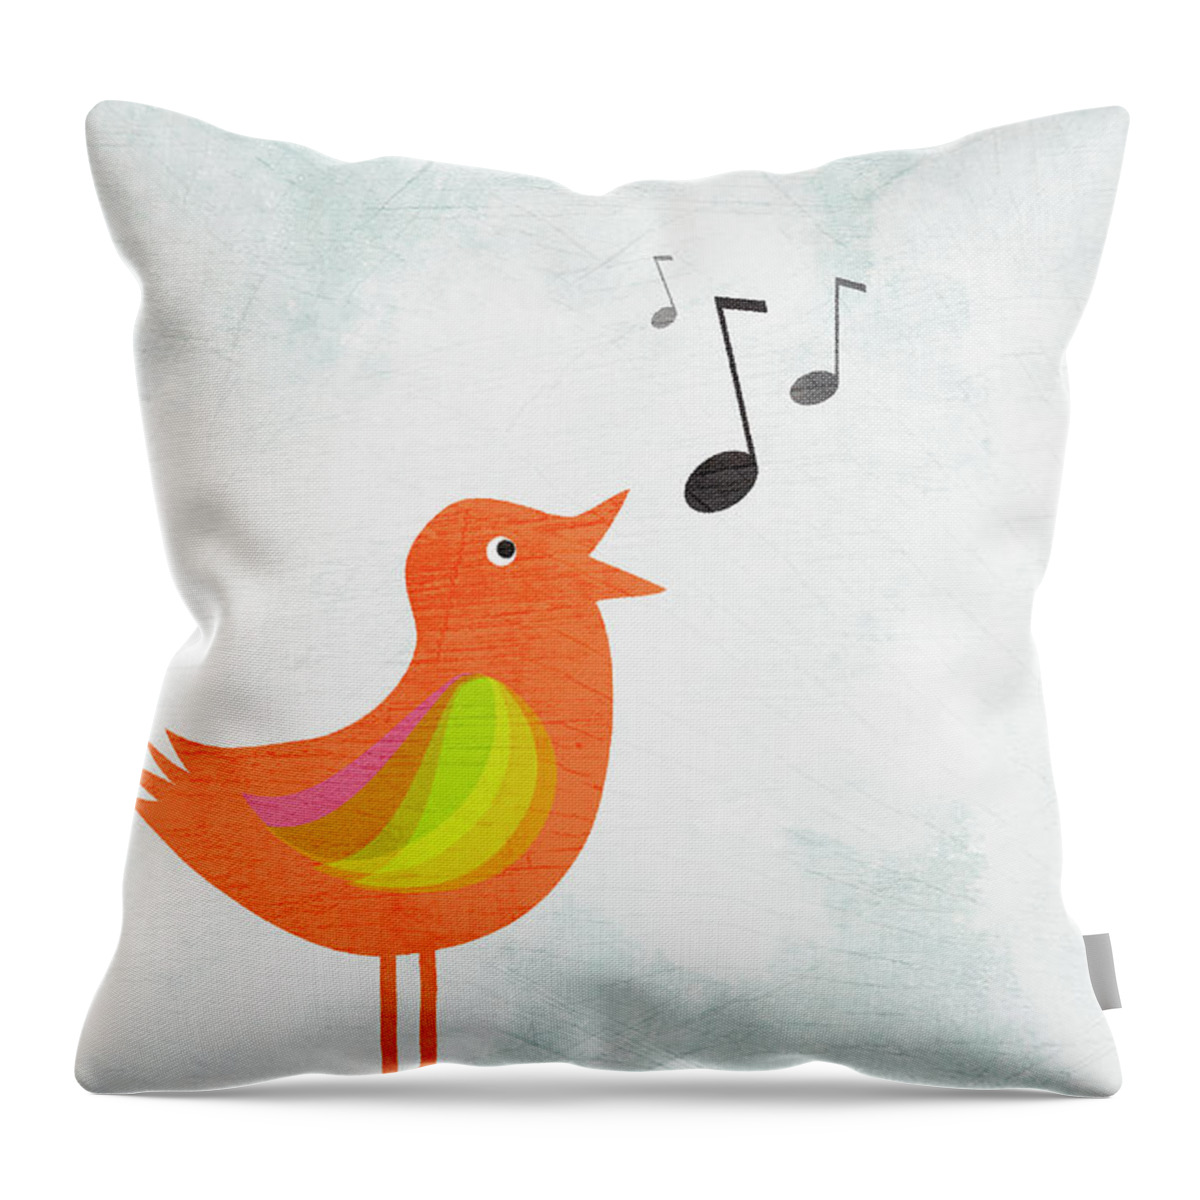 Music Throw Pillow featuring the digital art A Bird Singing by Jutta Kuss